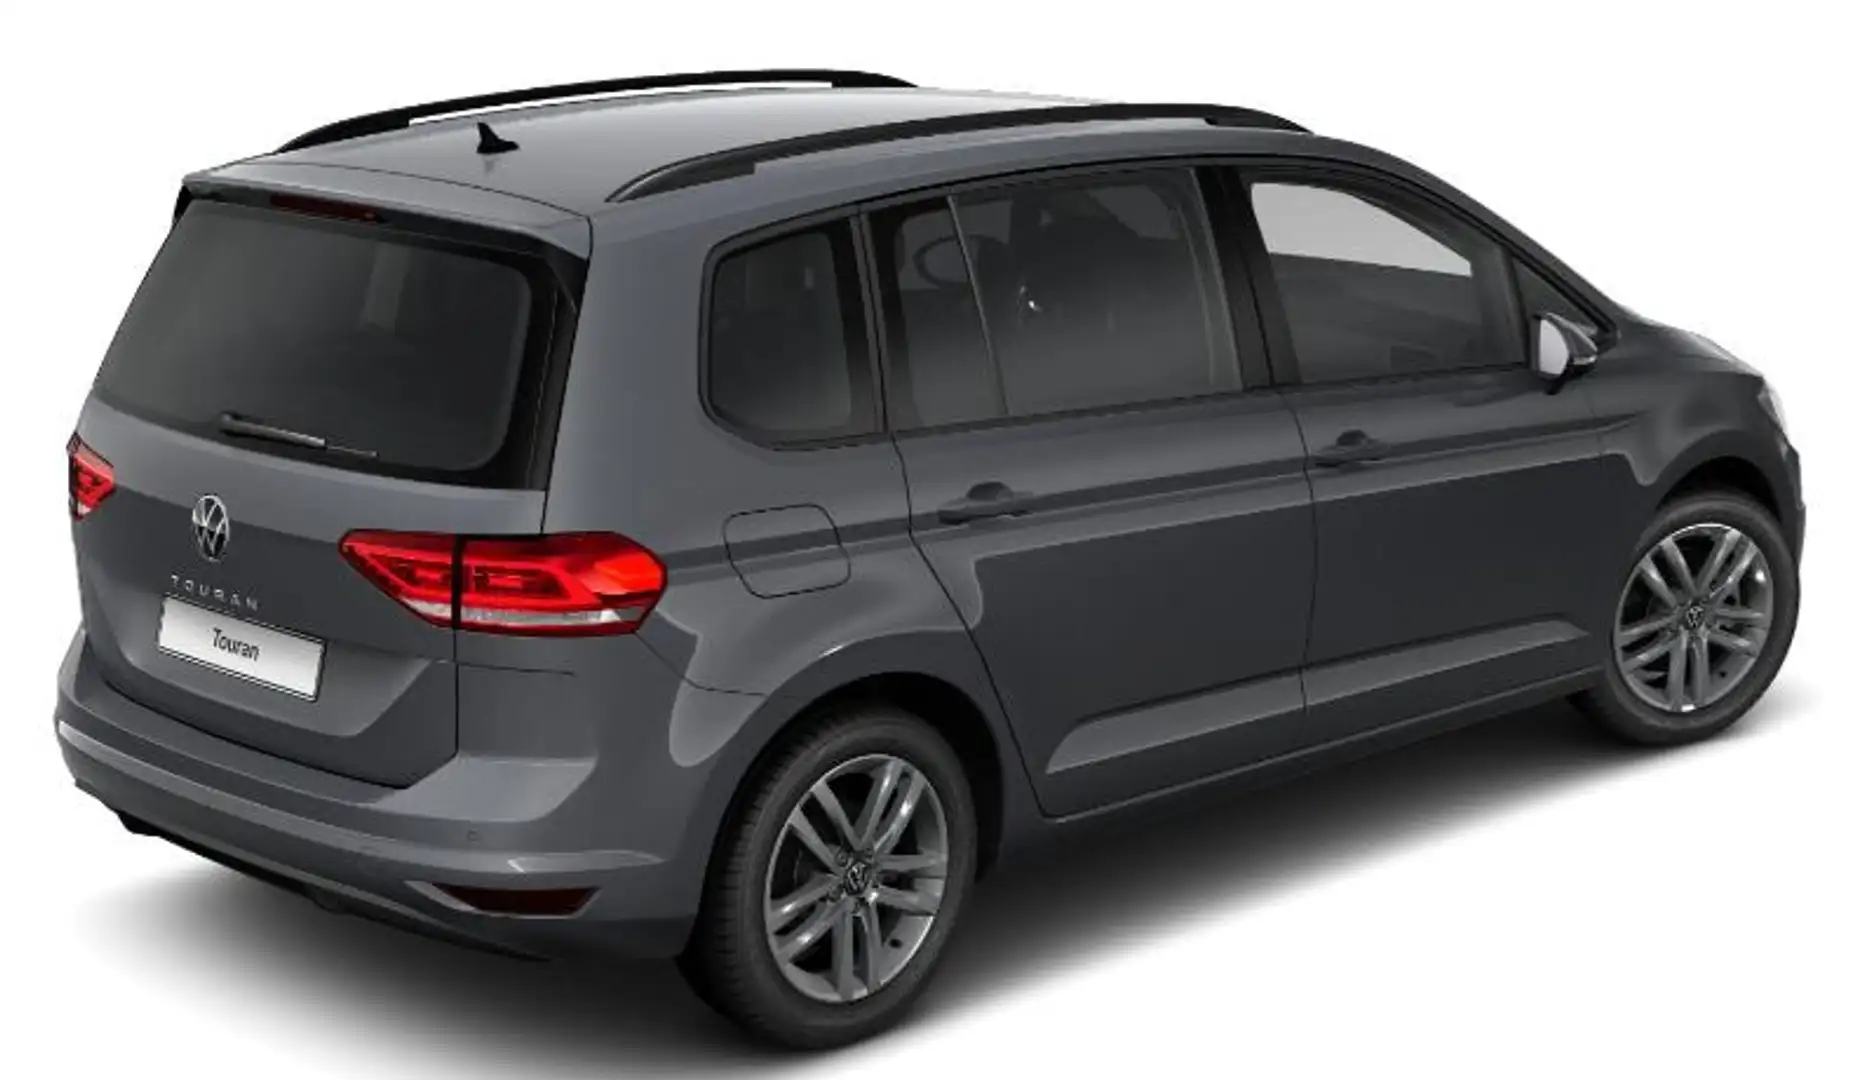 Volkswagen Touran Comfortline 1.5 TSI 150 PS, Klima, Parksensoren... - 2